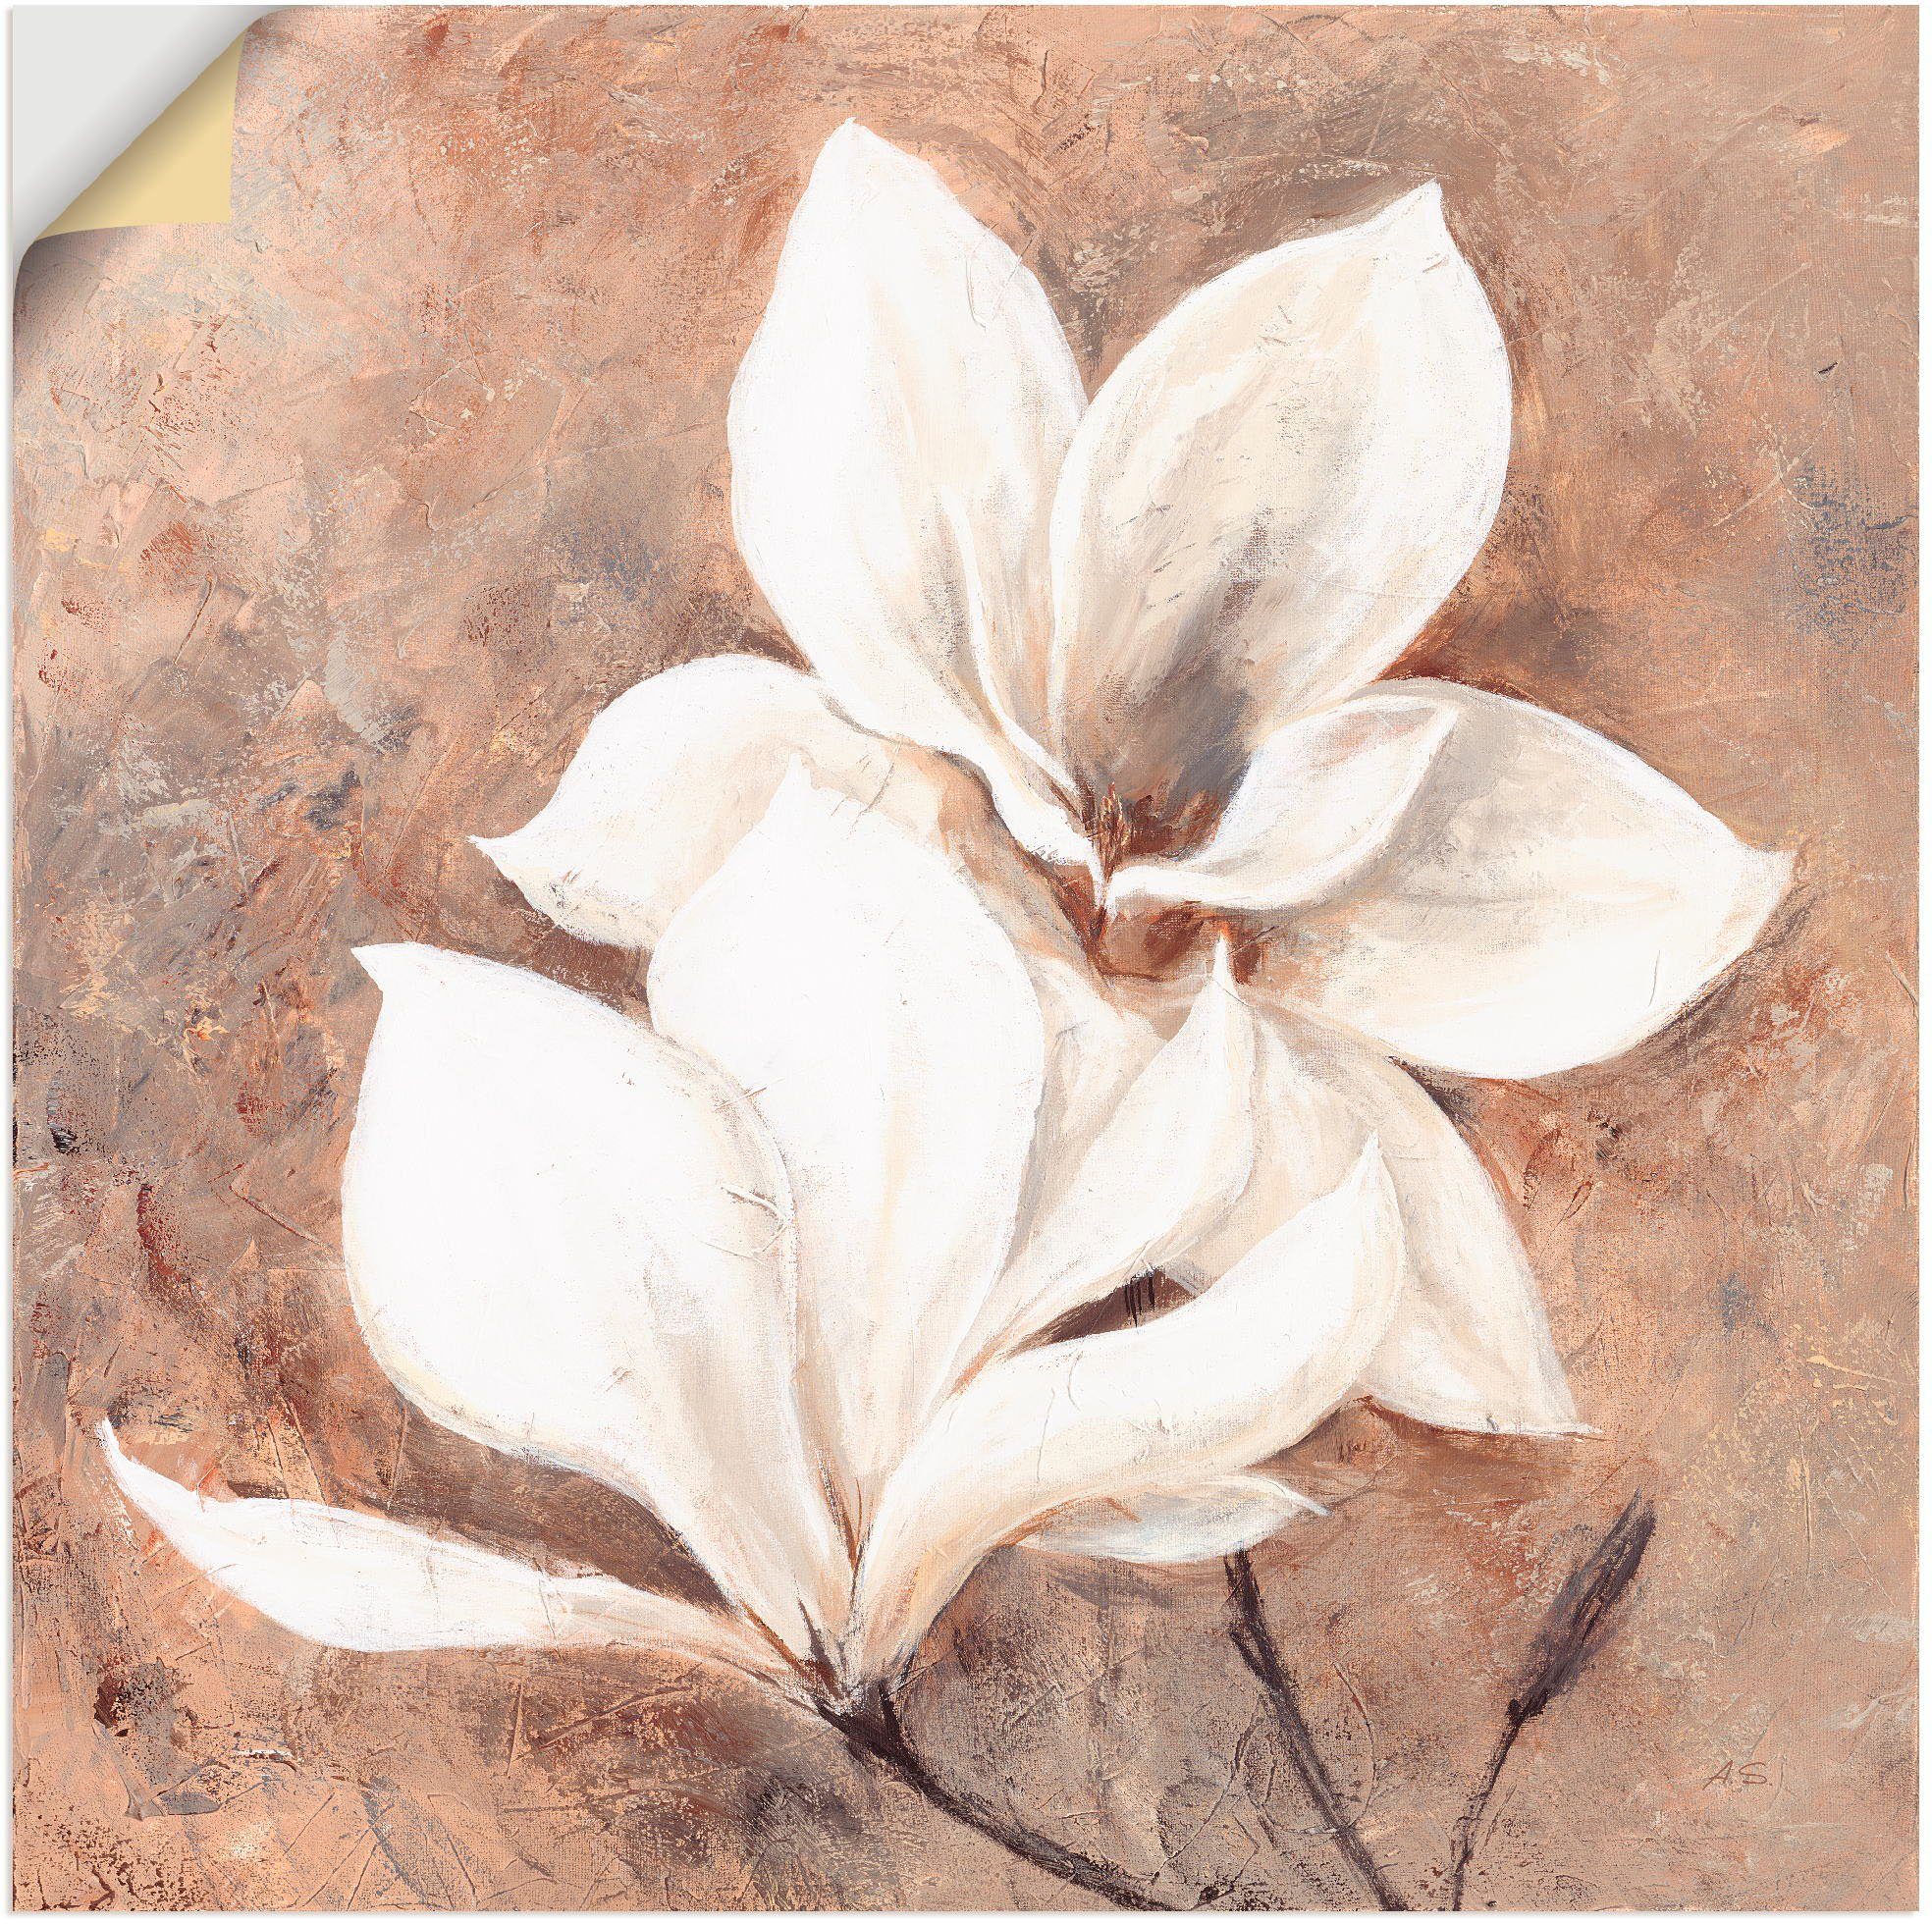 Artland Artprint Klassieke magnolia's in vele afmetingen & productsoorten - artprint van aluminium / artprint voor buiten, artprint op linnen, poster, muursticker / wandfolie ook g